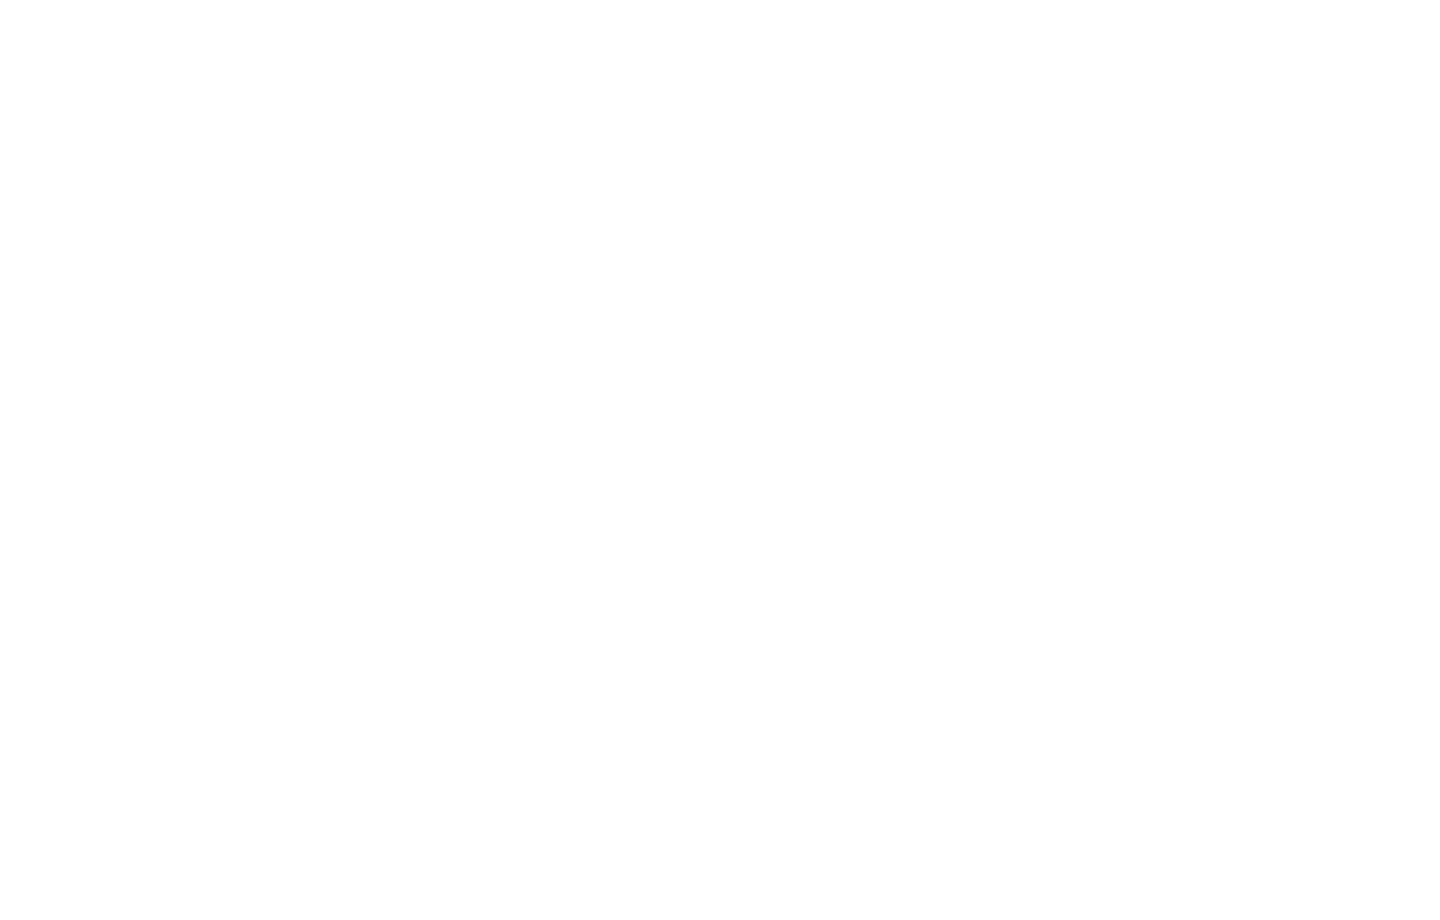 Caffe Barista